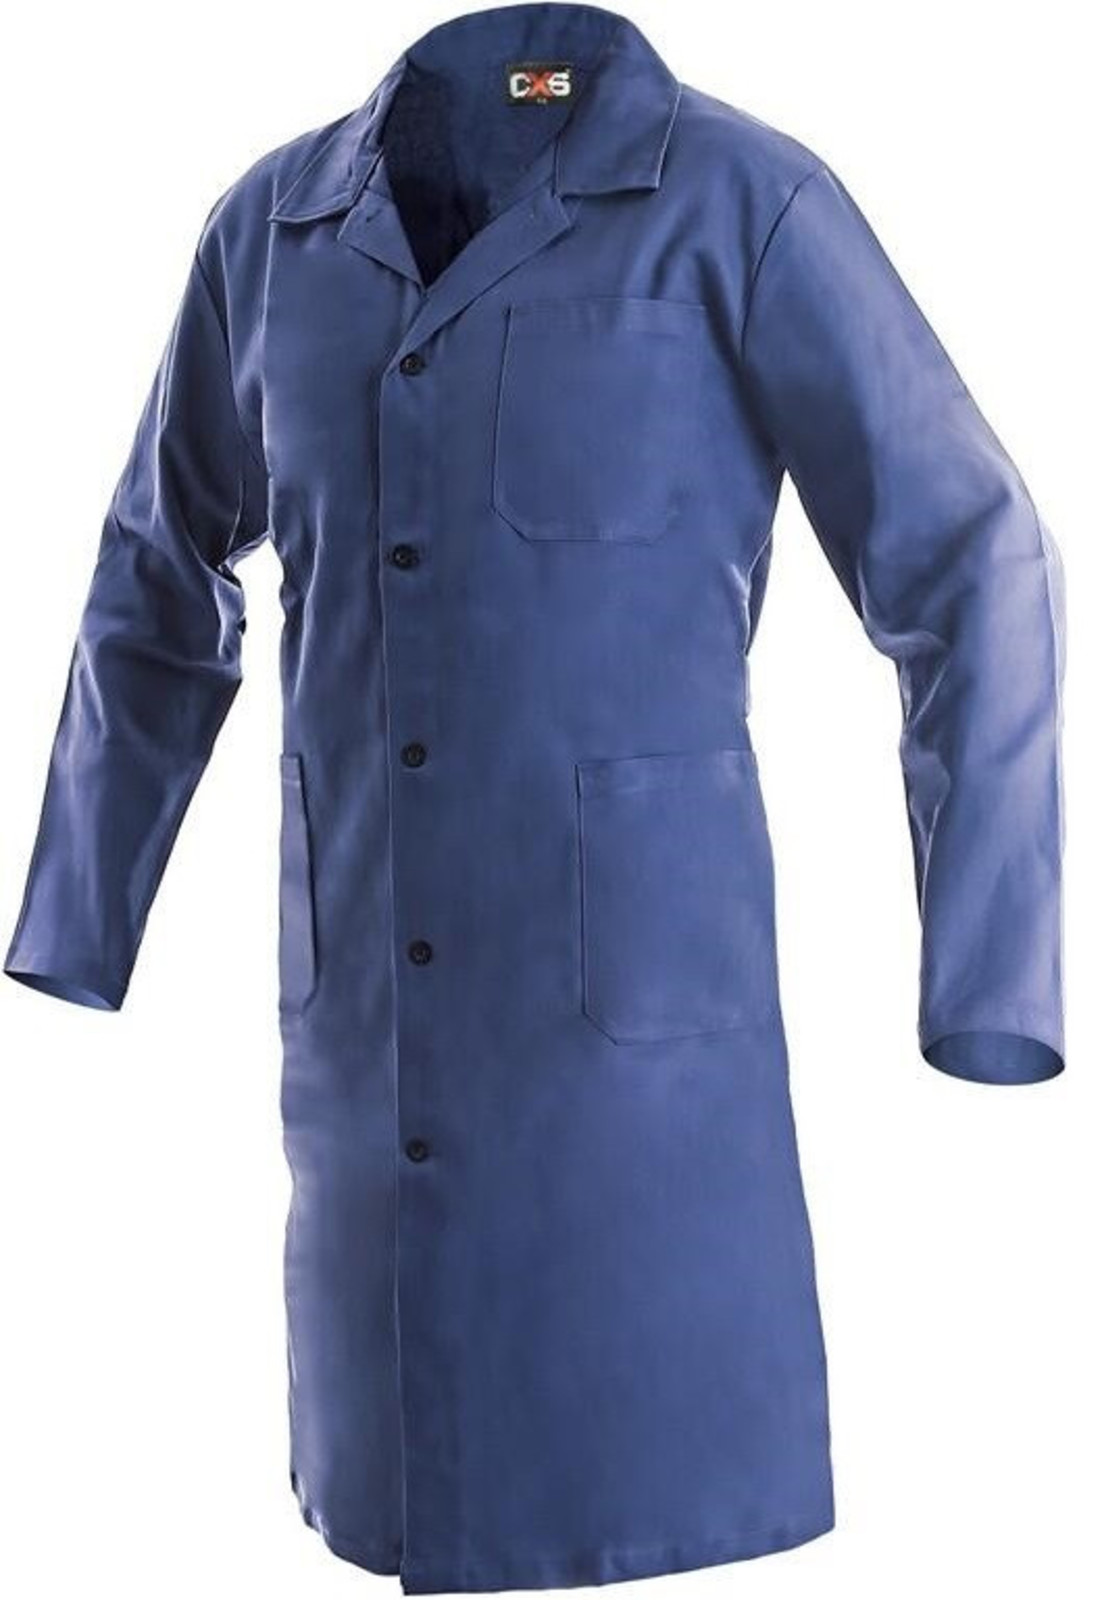 Pánsky pracovný plášť CXS Klasik Venca - veľkosť: 48, farba: modrá